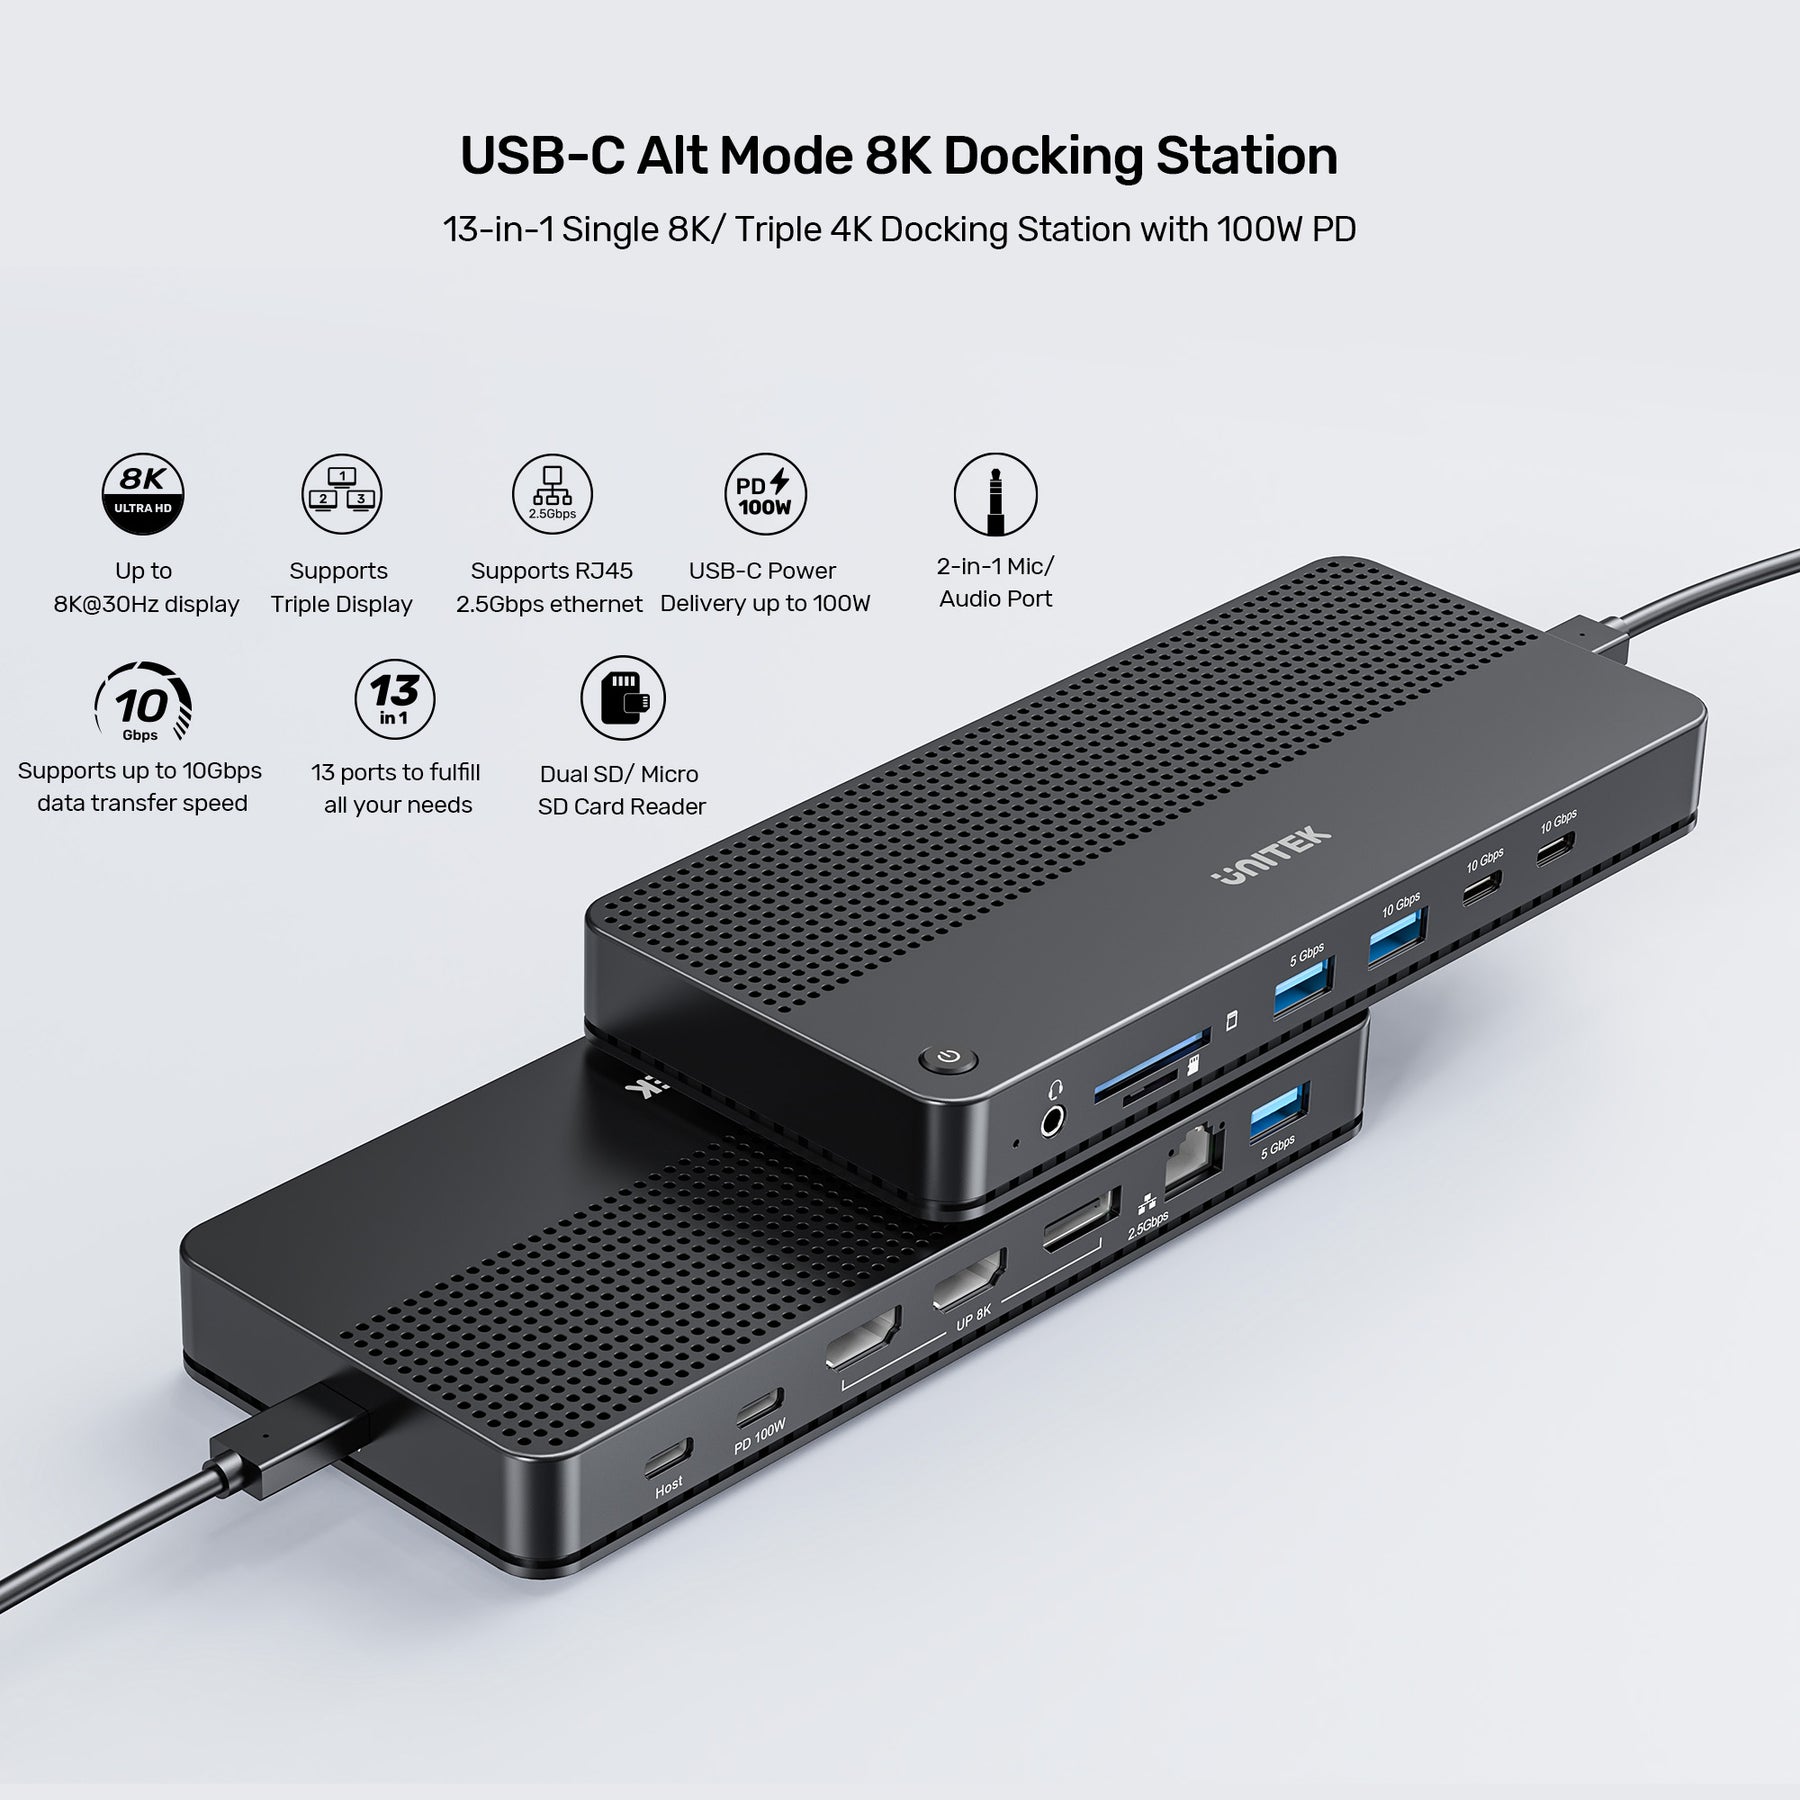 USB-C 8K Docking Station with 100W PD